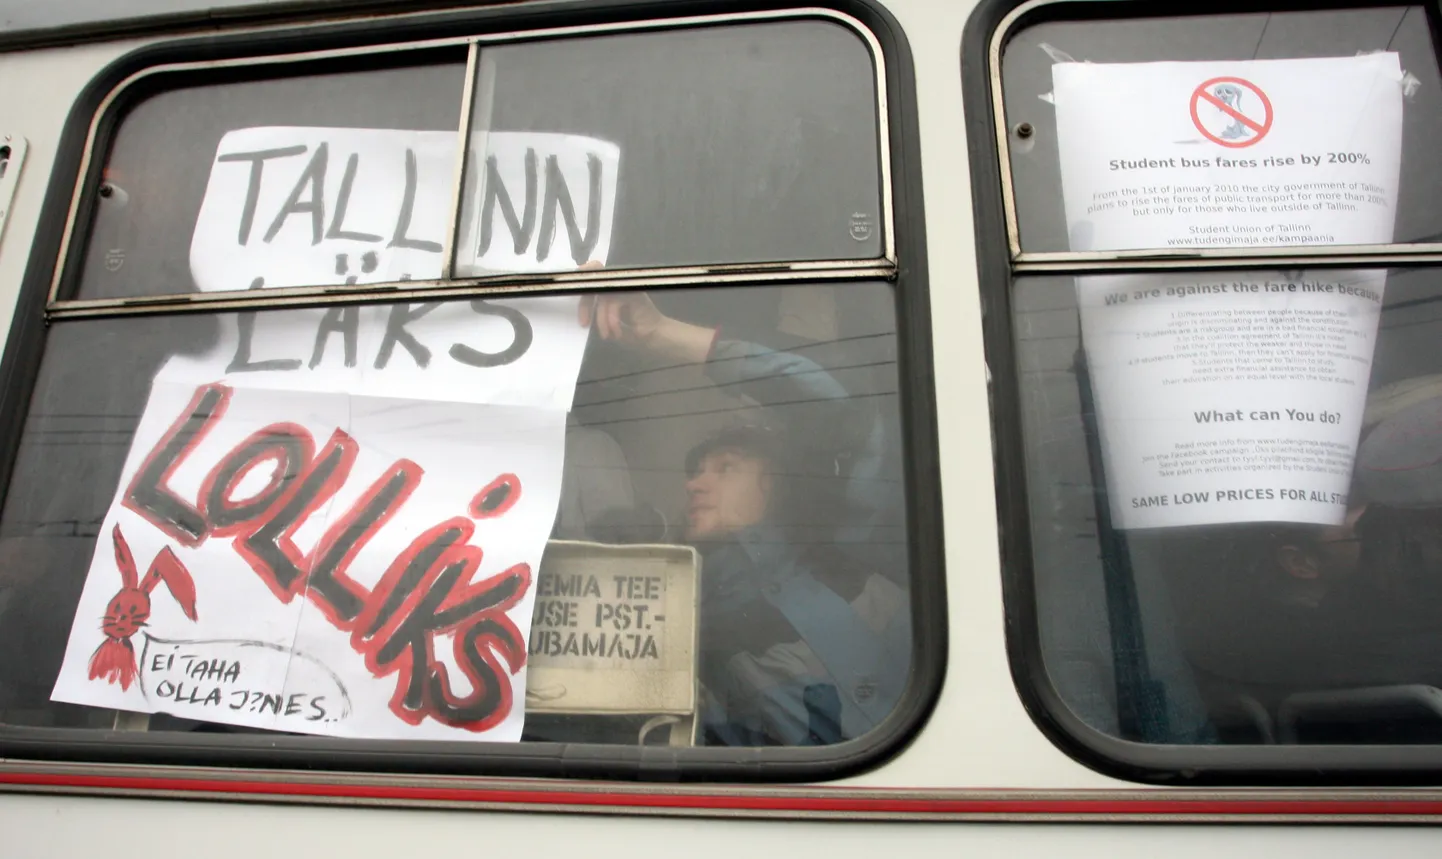 Mustamäel trolli 2 ja 3 lõpppeatuses toimus 8. detsembril 2009 tudengite meeleavaldus, et informeerida neid Tallinna linnavalitsuse kavatsusest kaotada ära üliõpilaste sõidusoodustused.